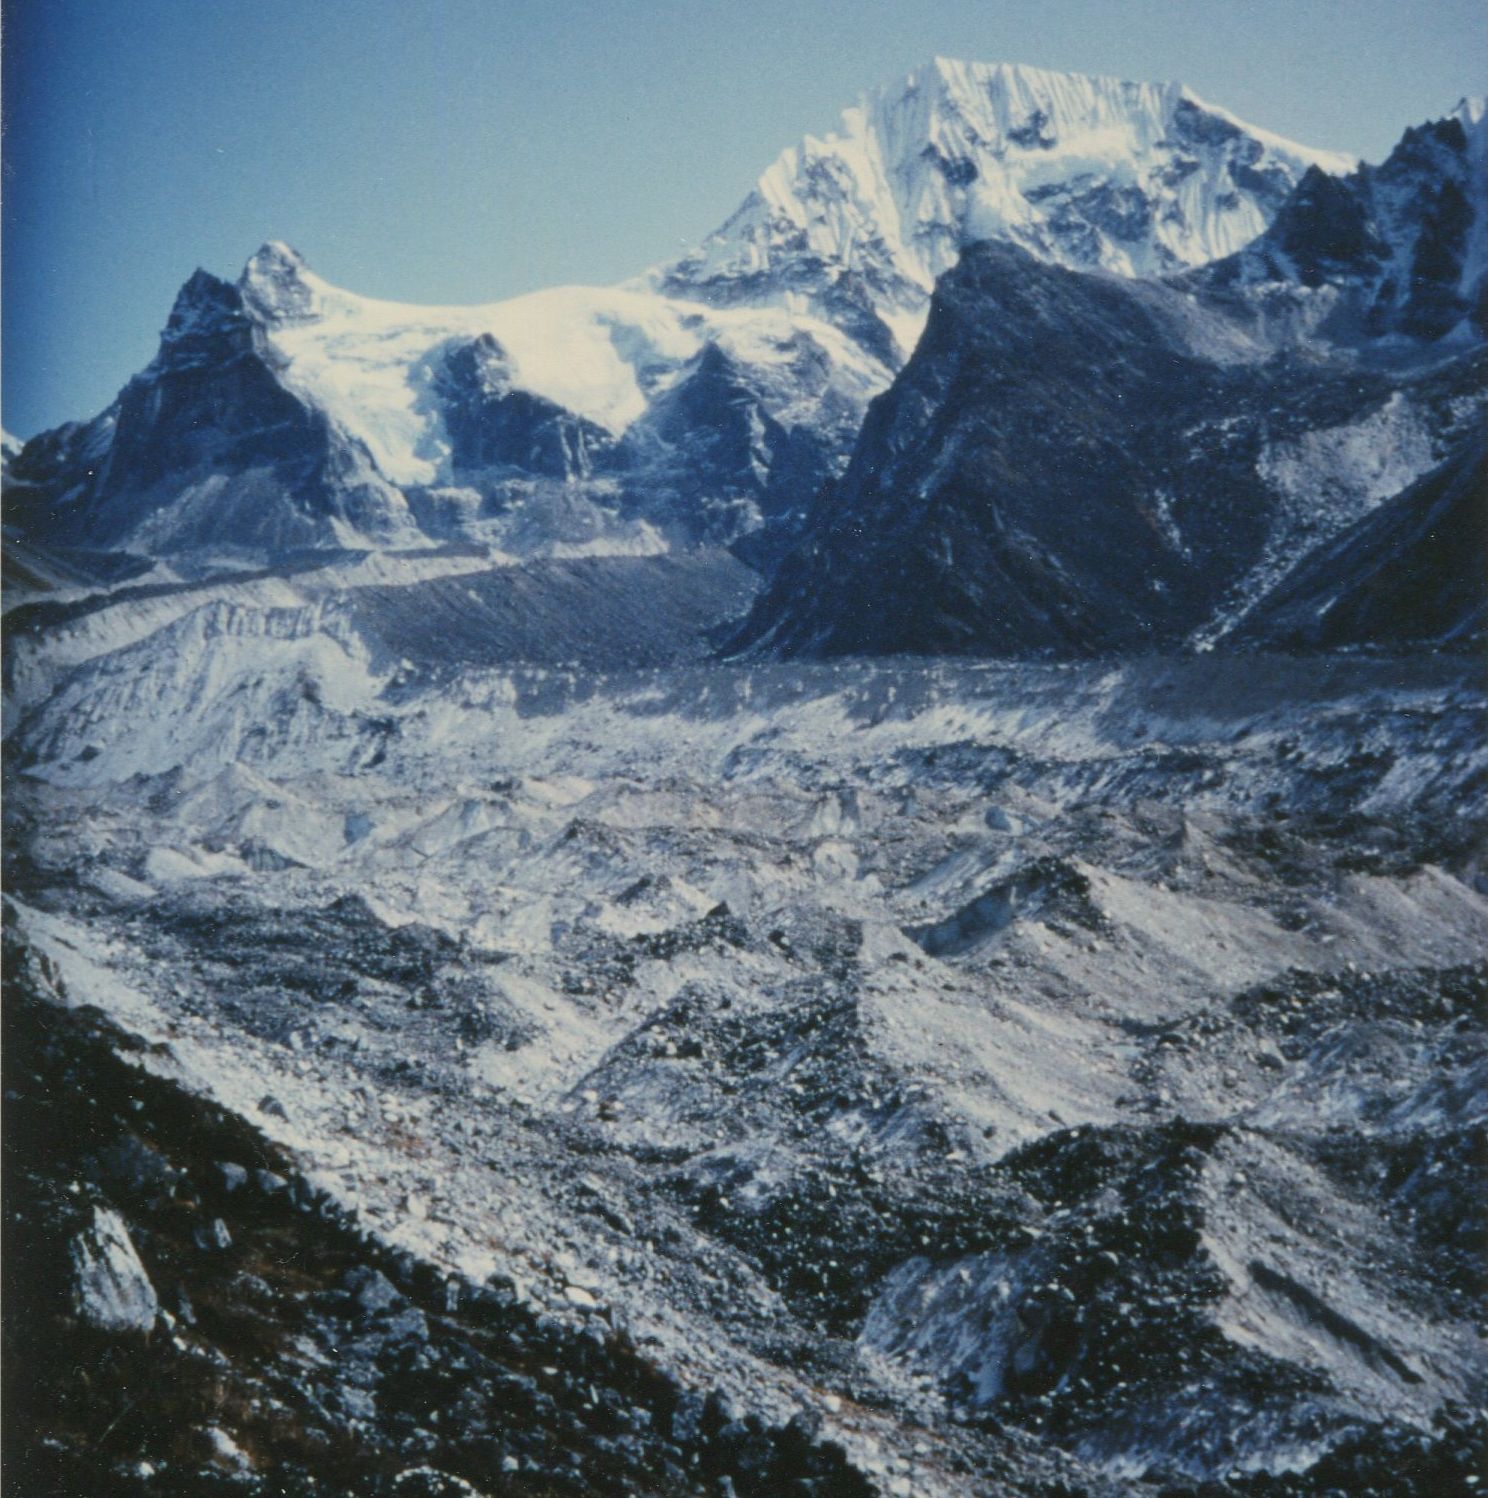 Yalung Glacier and Mount Koktang on the South Side of Mount Kangchenjunga